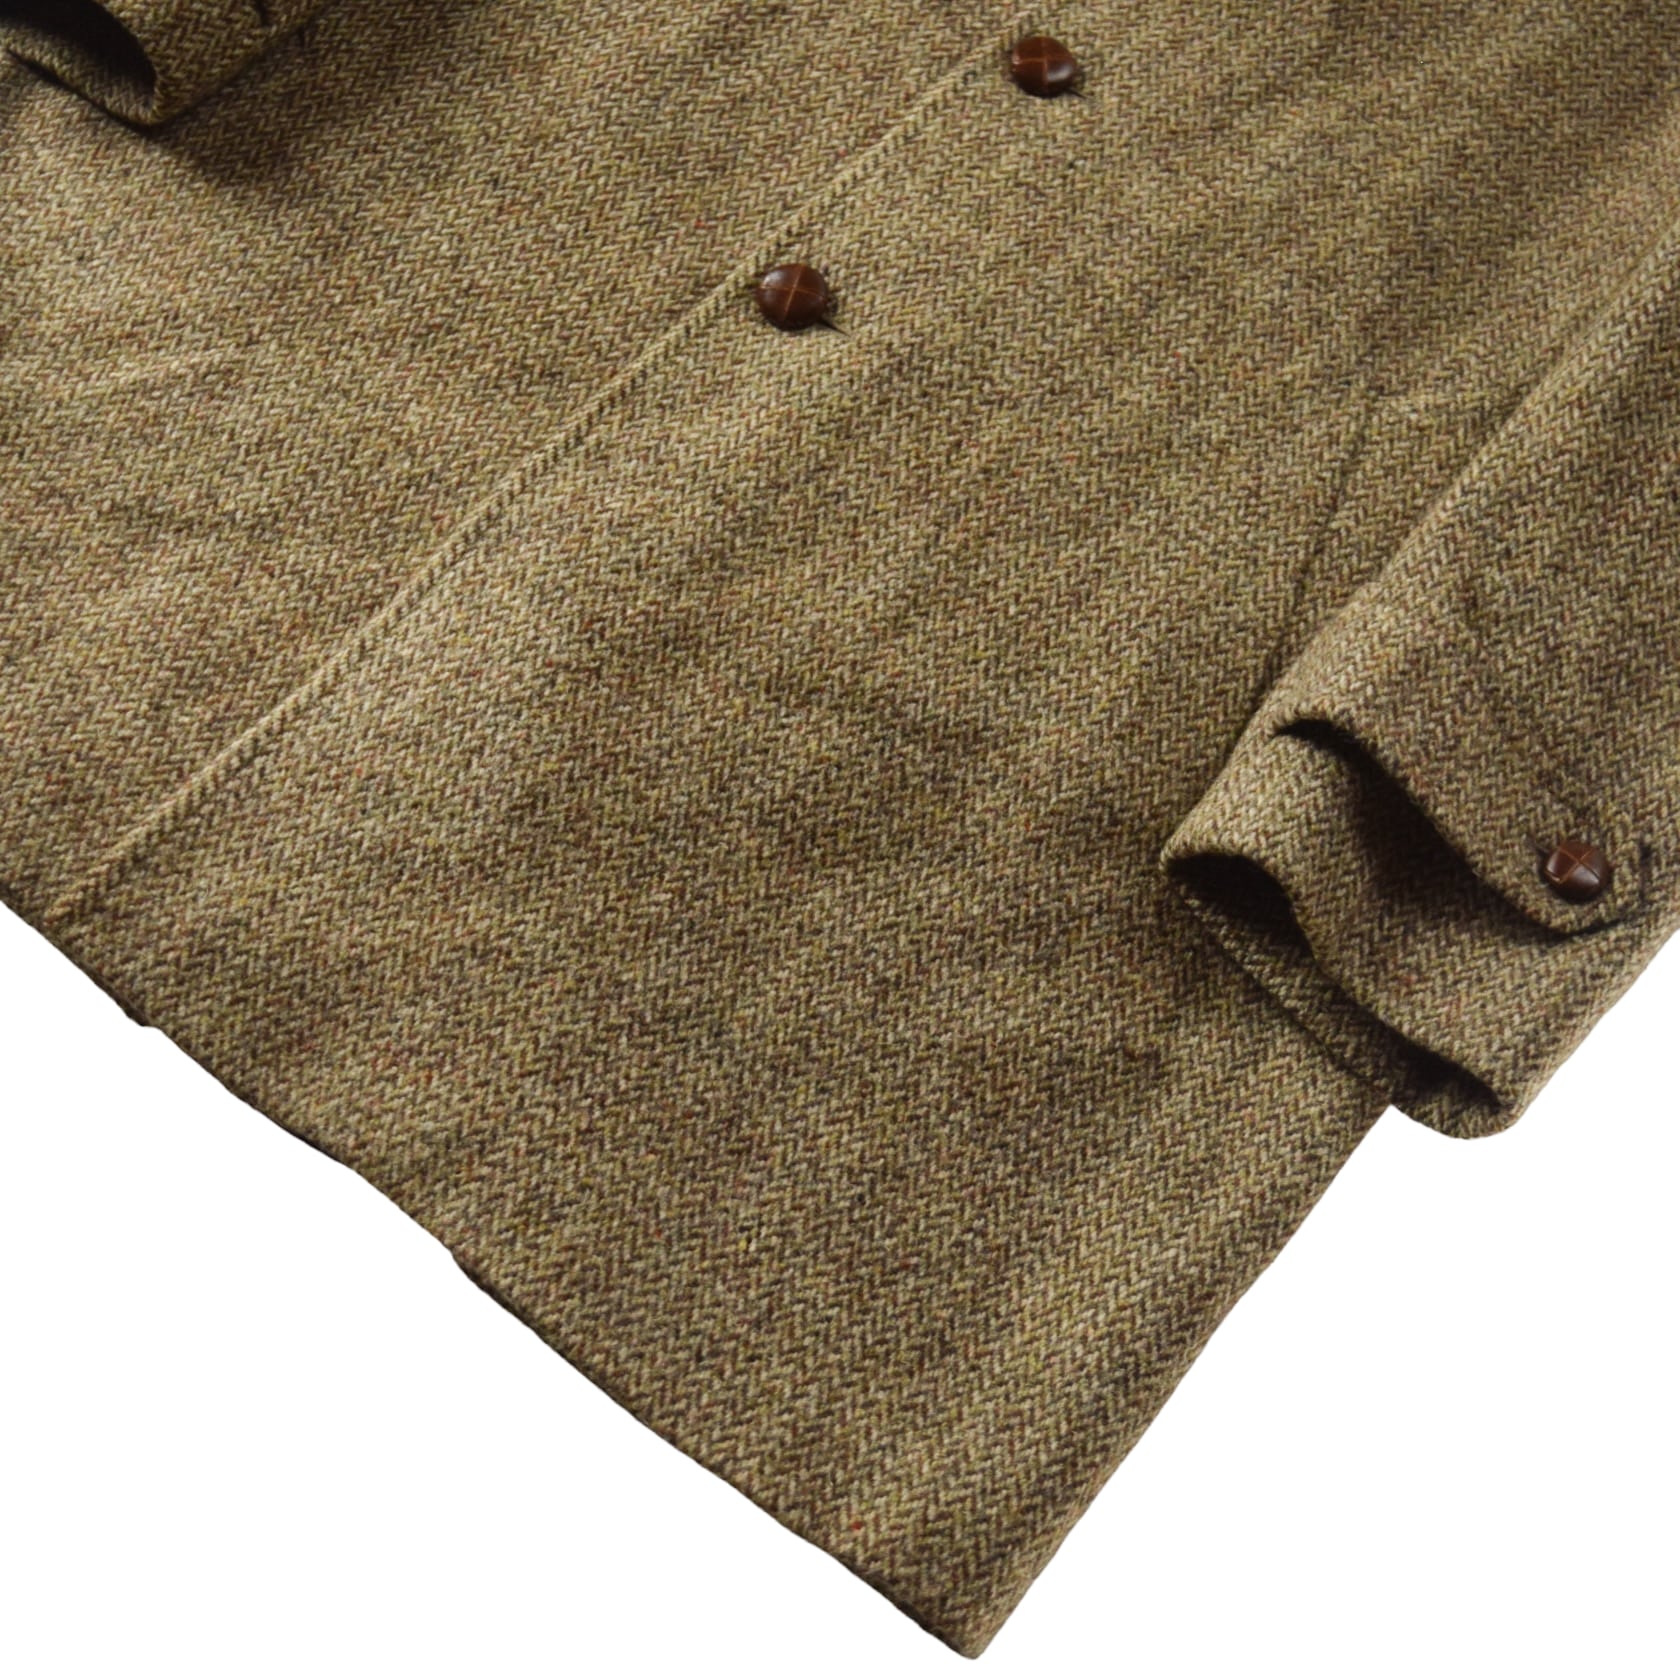 's "Harris Tweed" Vintage Tweed Wool Coat Made In ENGLAND /